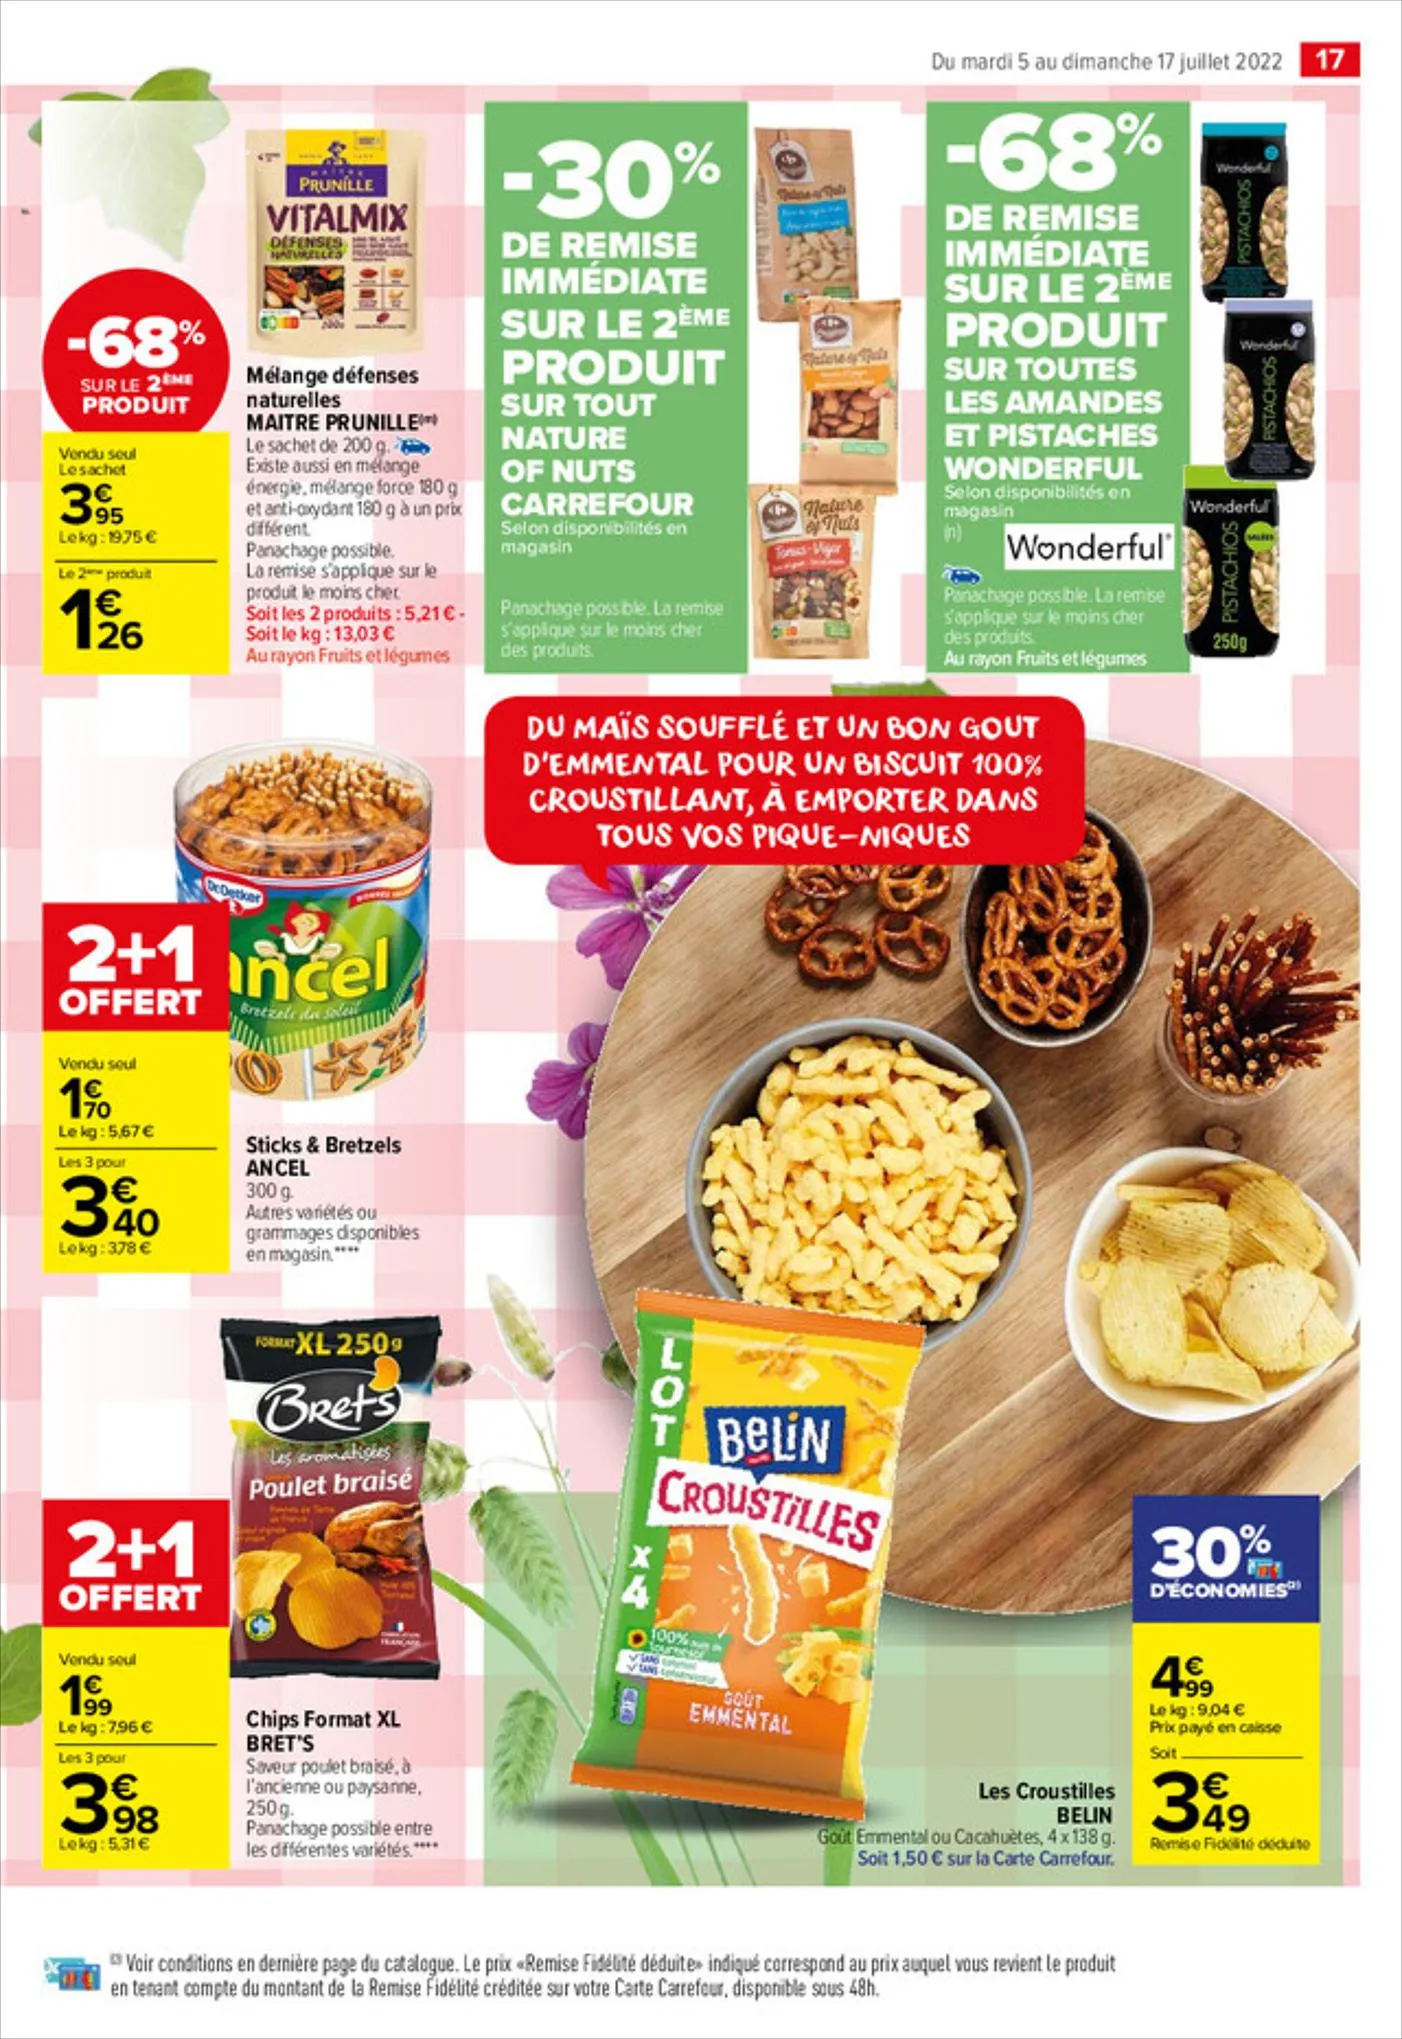 Catalogue Des promos toutes fraîches !, page 00017